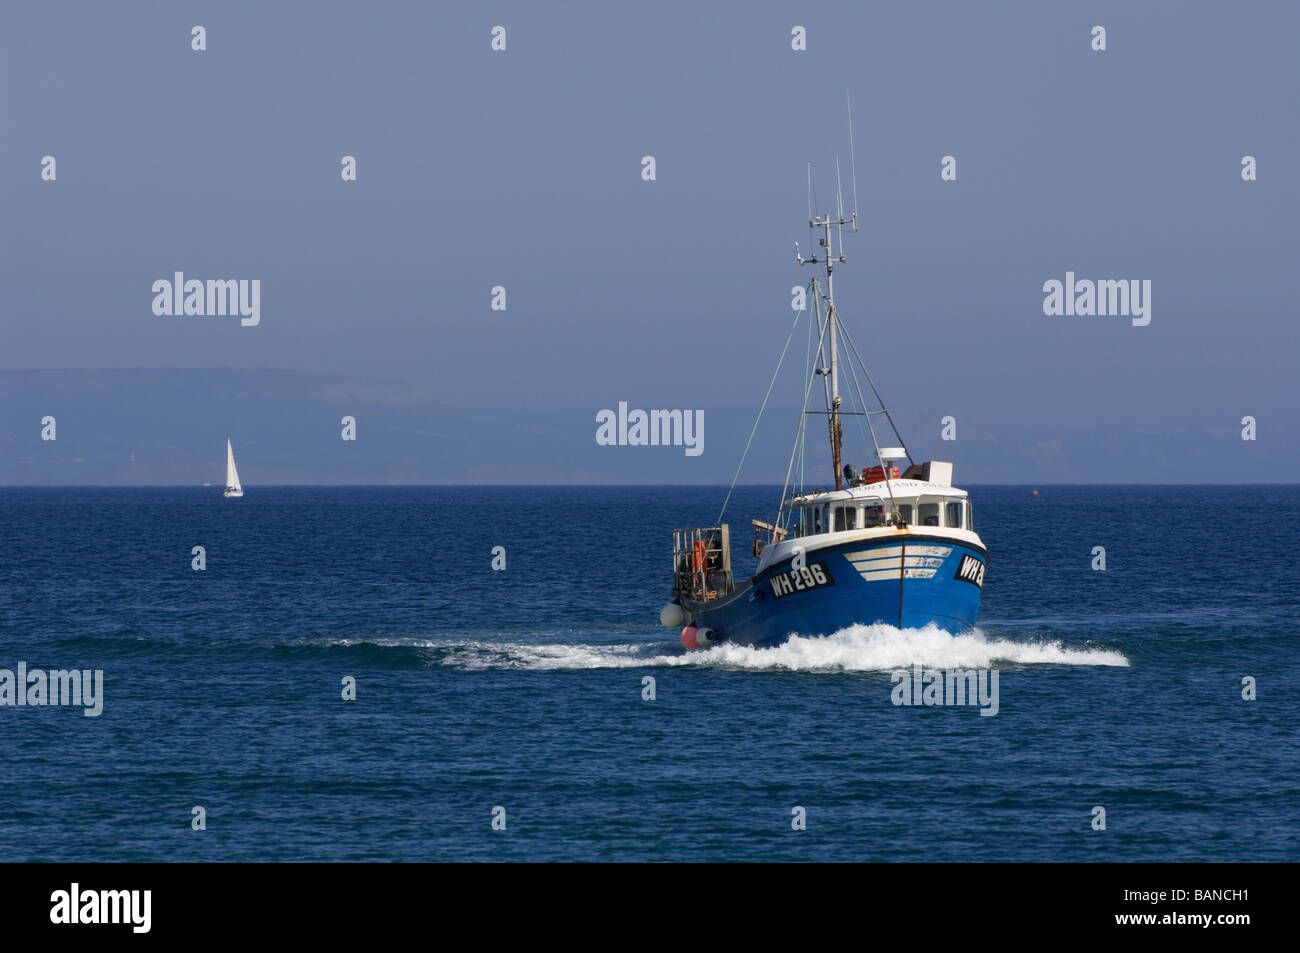 WH296 chalutier de pêche en mer au large de la côte de Weymouth, dans le Dorset, Angleterre. Banque D'Images